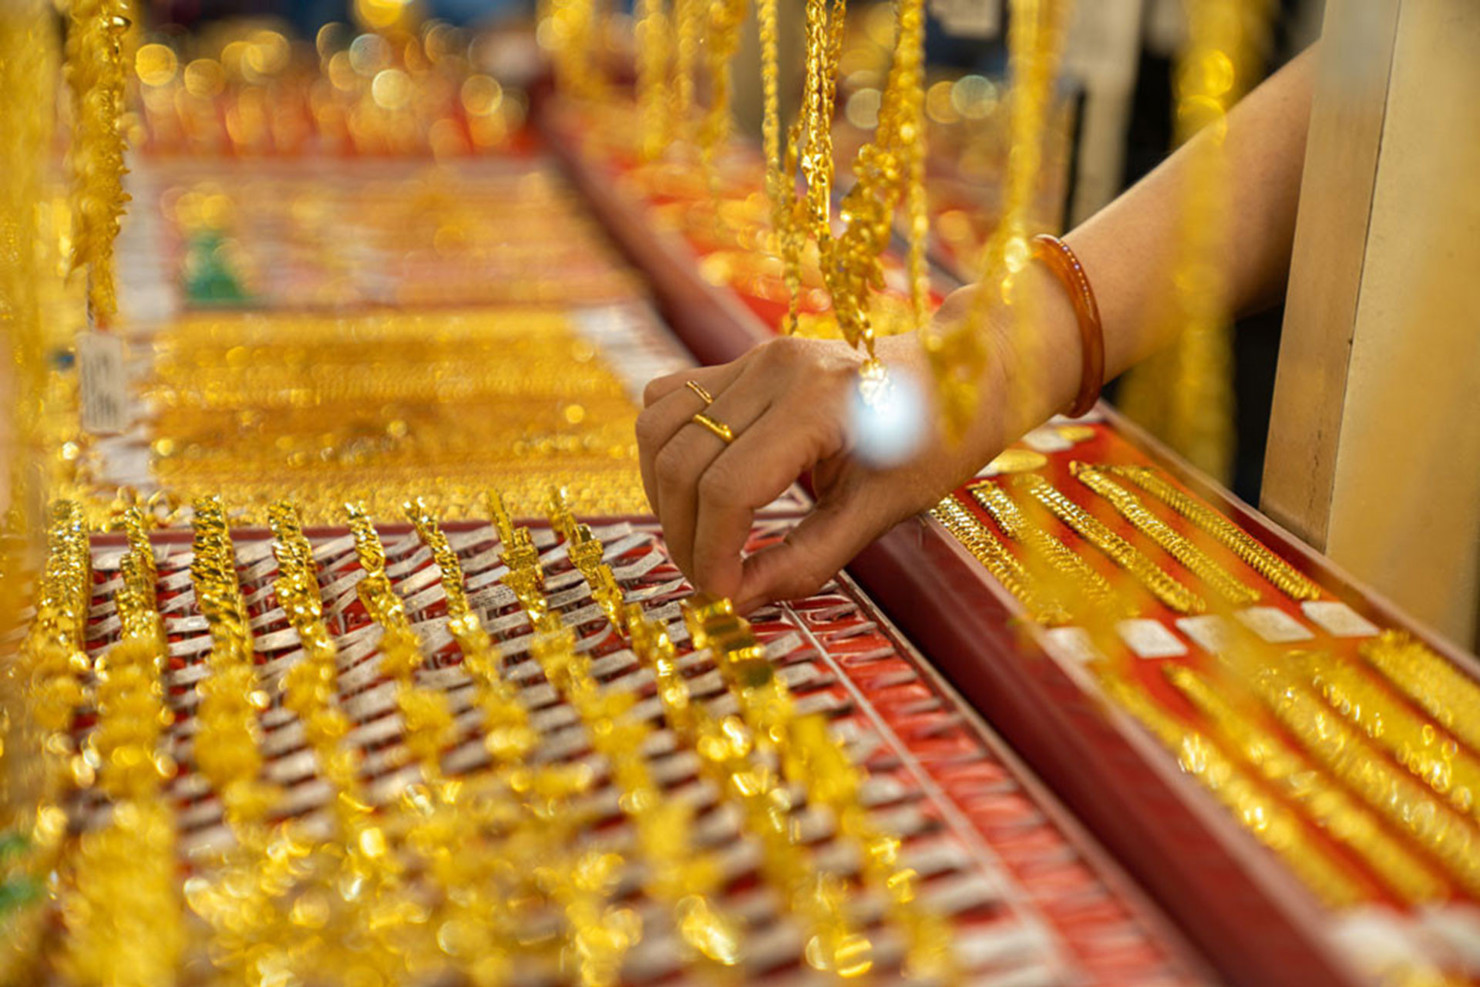 Giá vàng miếng đang được giao dịch ở ngưỡng 66,5 – 67,03 triệu đồng/lượng, tăng 30 nghìn đồng/lượng chiều mua vào và 100 nghìn đồng/lượng chiều bán ra.